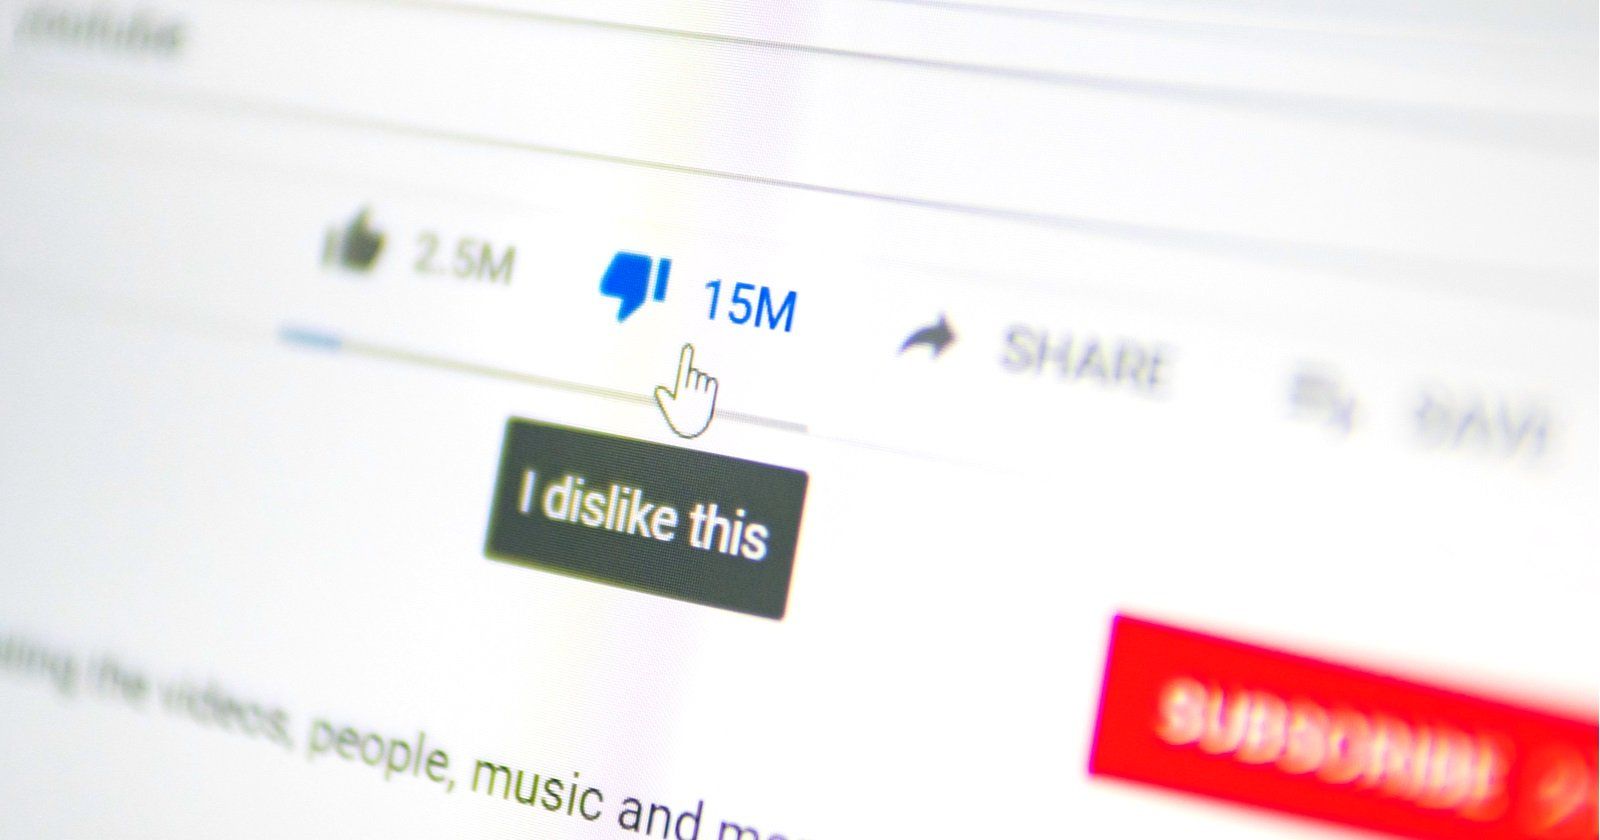 Để tránh kẻ gian spam tiêu cực, Youtube sắp “che giấu” số dislike của video